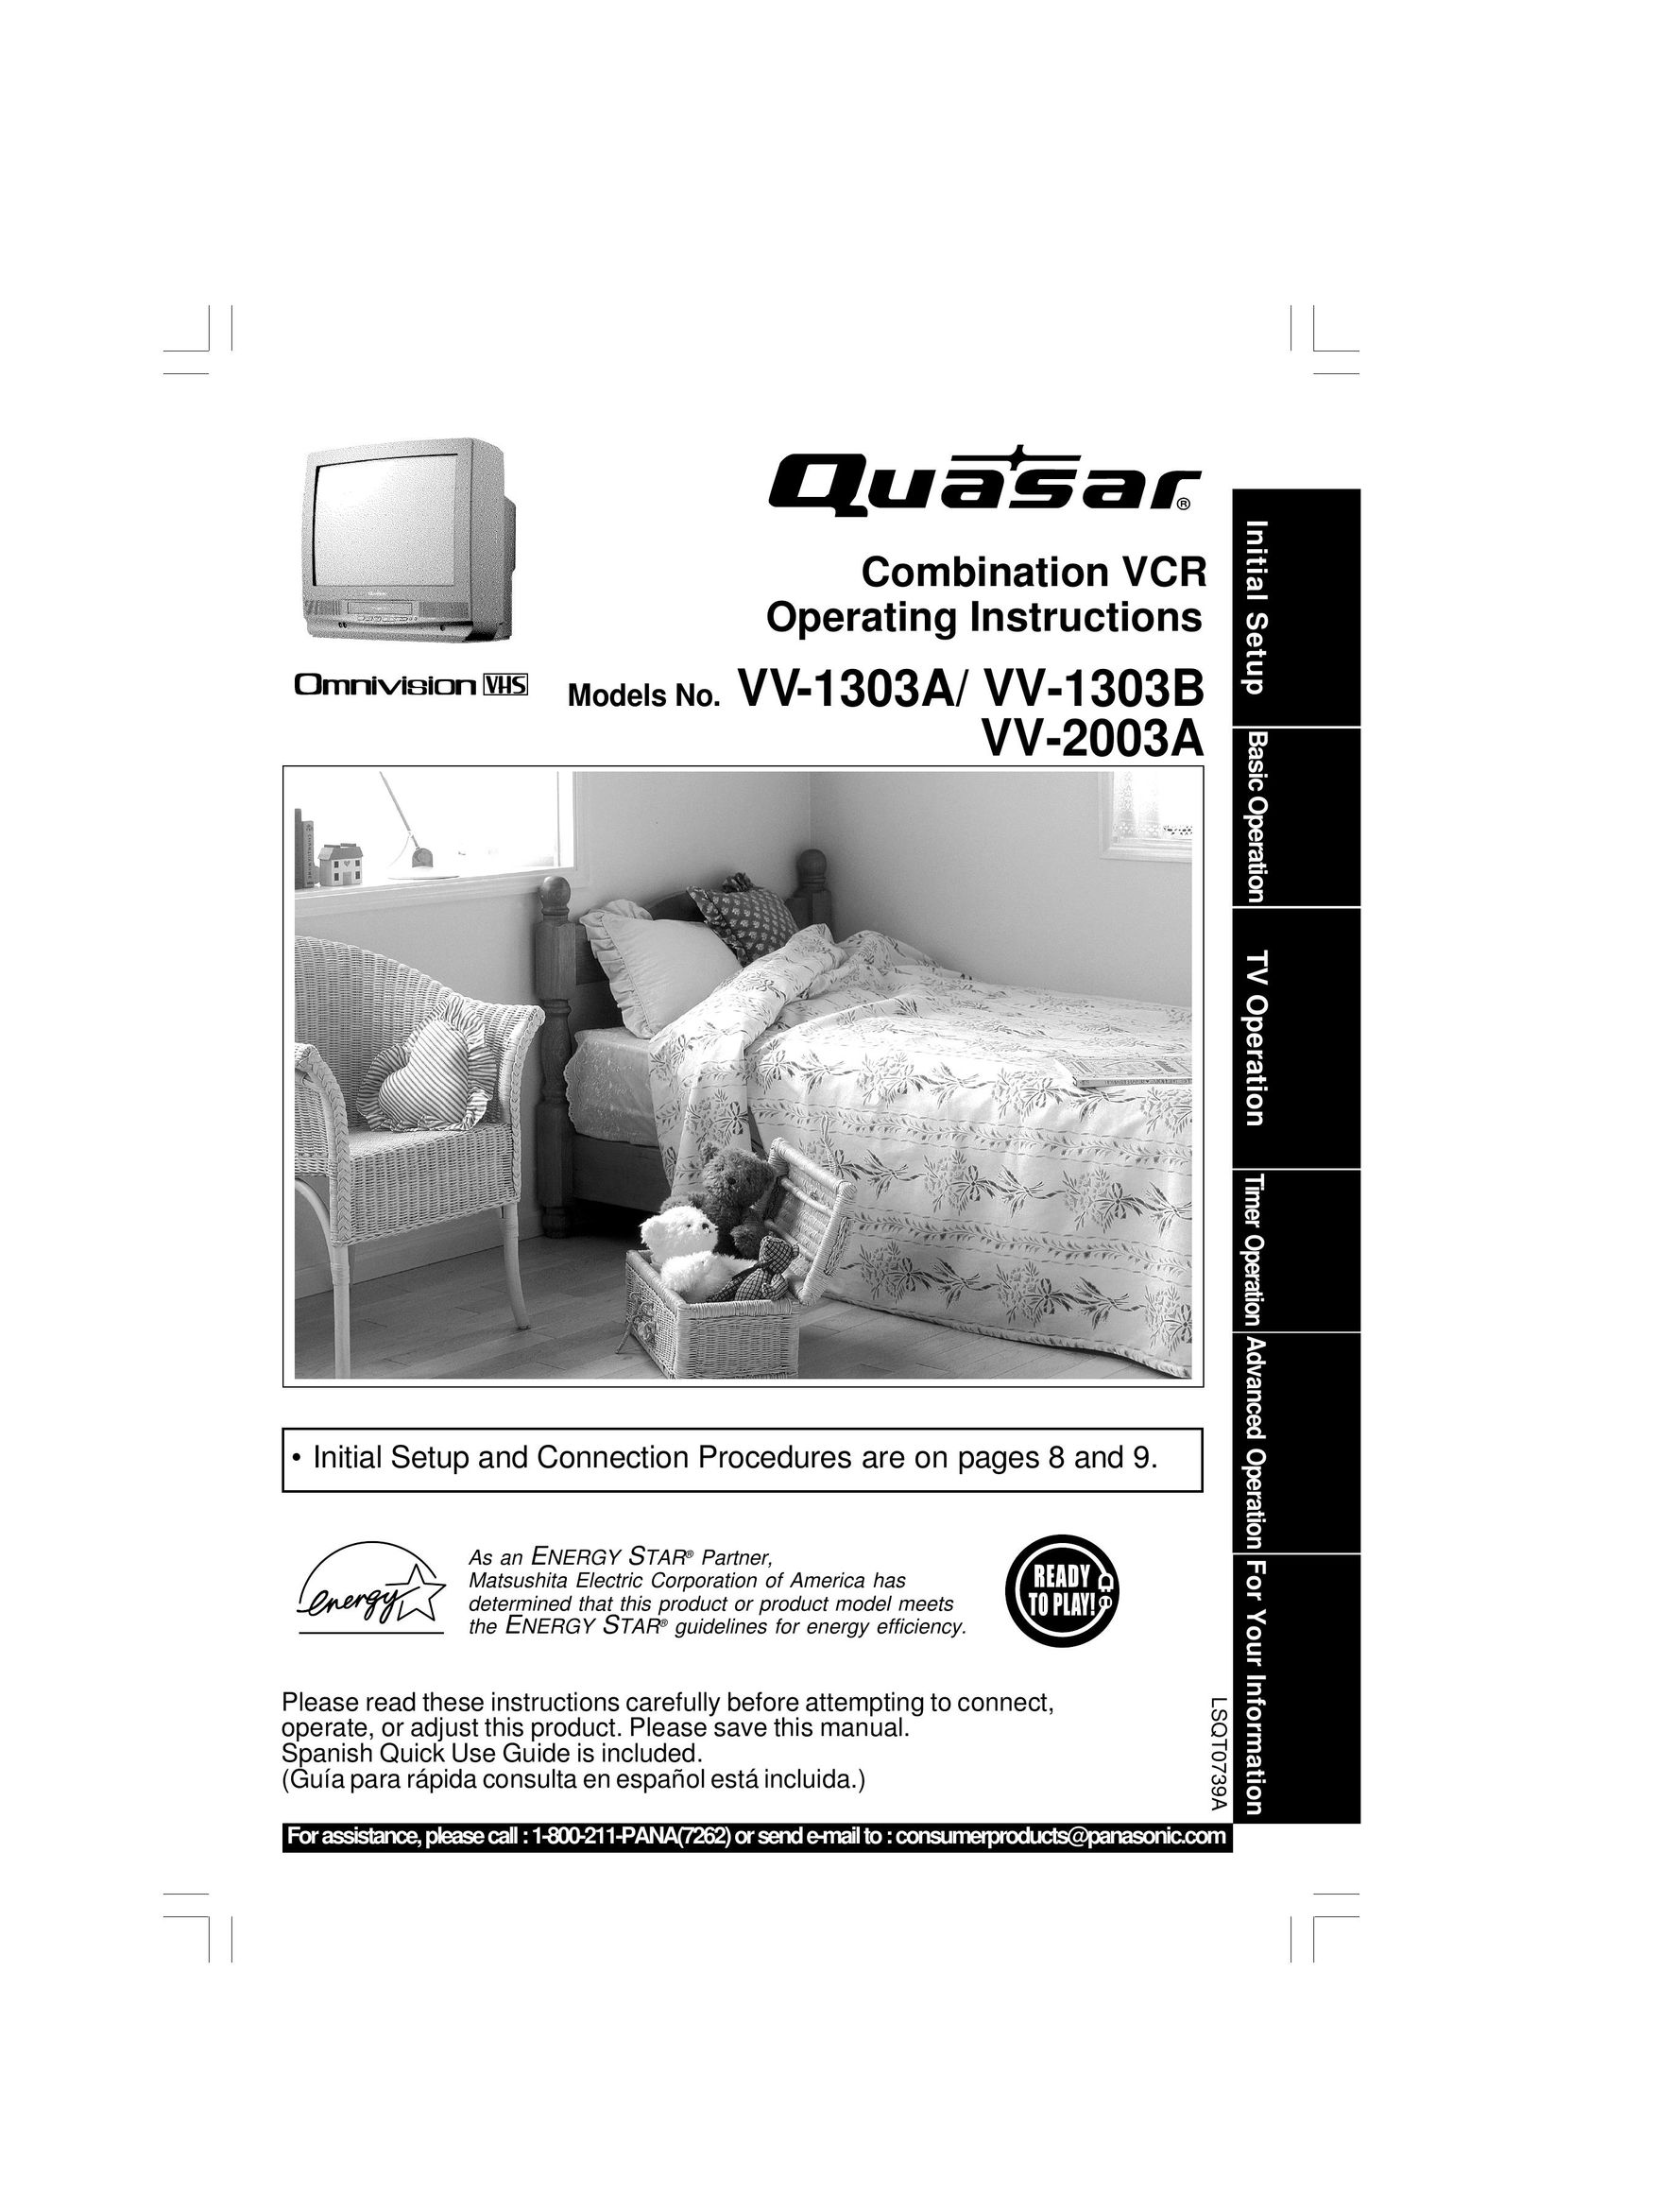 Quasar V V-2003A TV VCR Combo User Manual